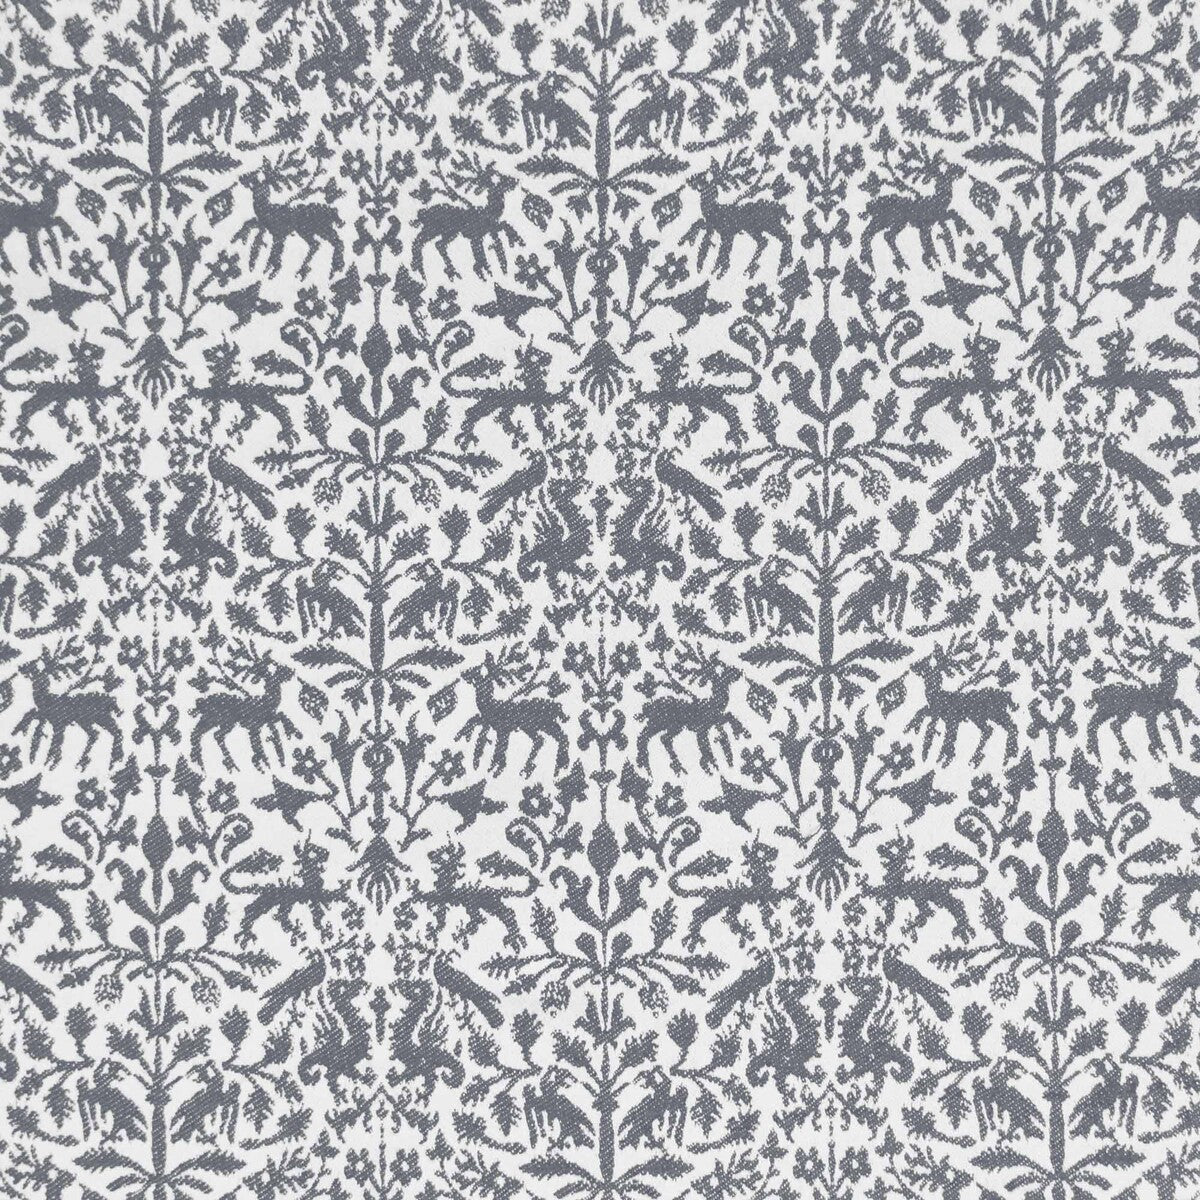 Augusta Emerita fabric in gris color - pattern LCT1112.004.0 - by Gaston y Daniela in the Lorenzo Castillo IX Hesperia collection